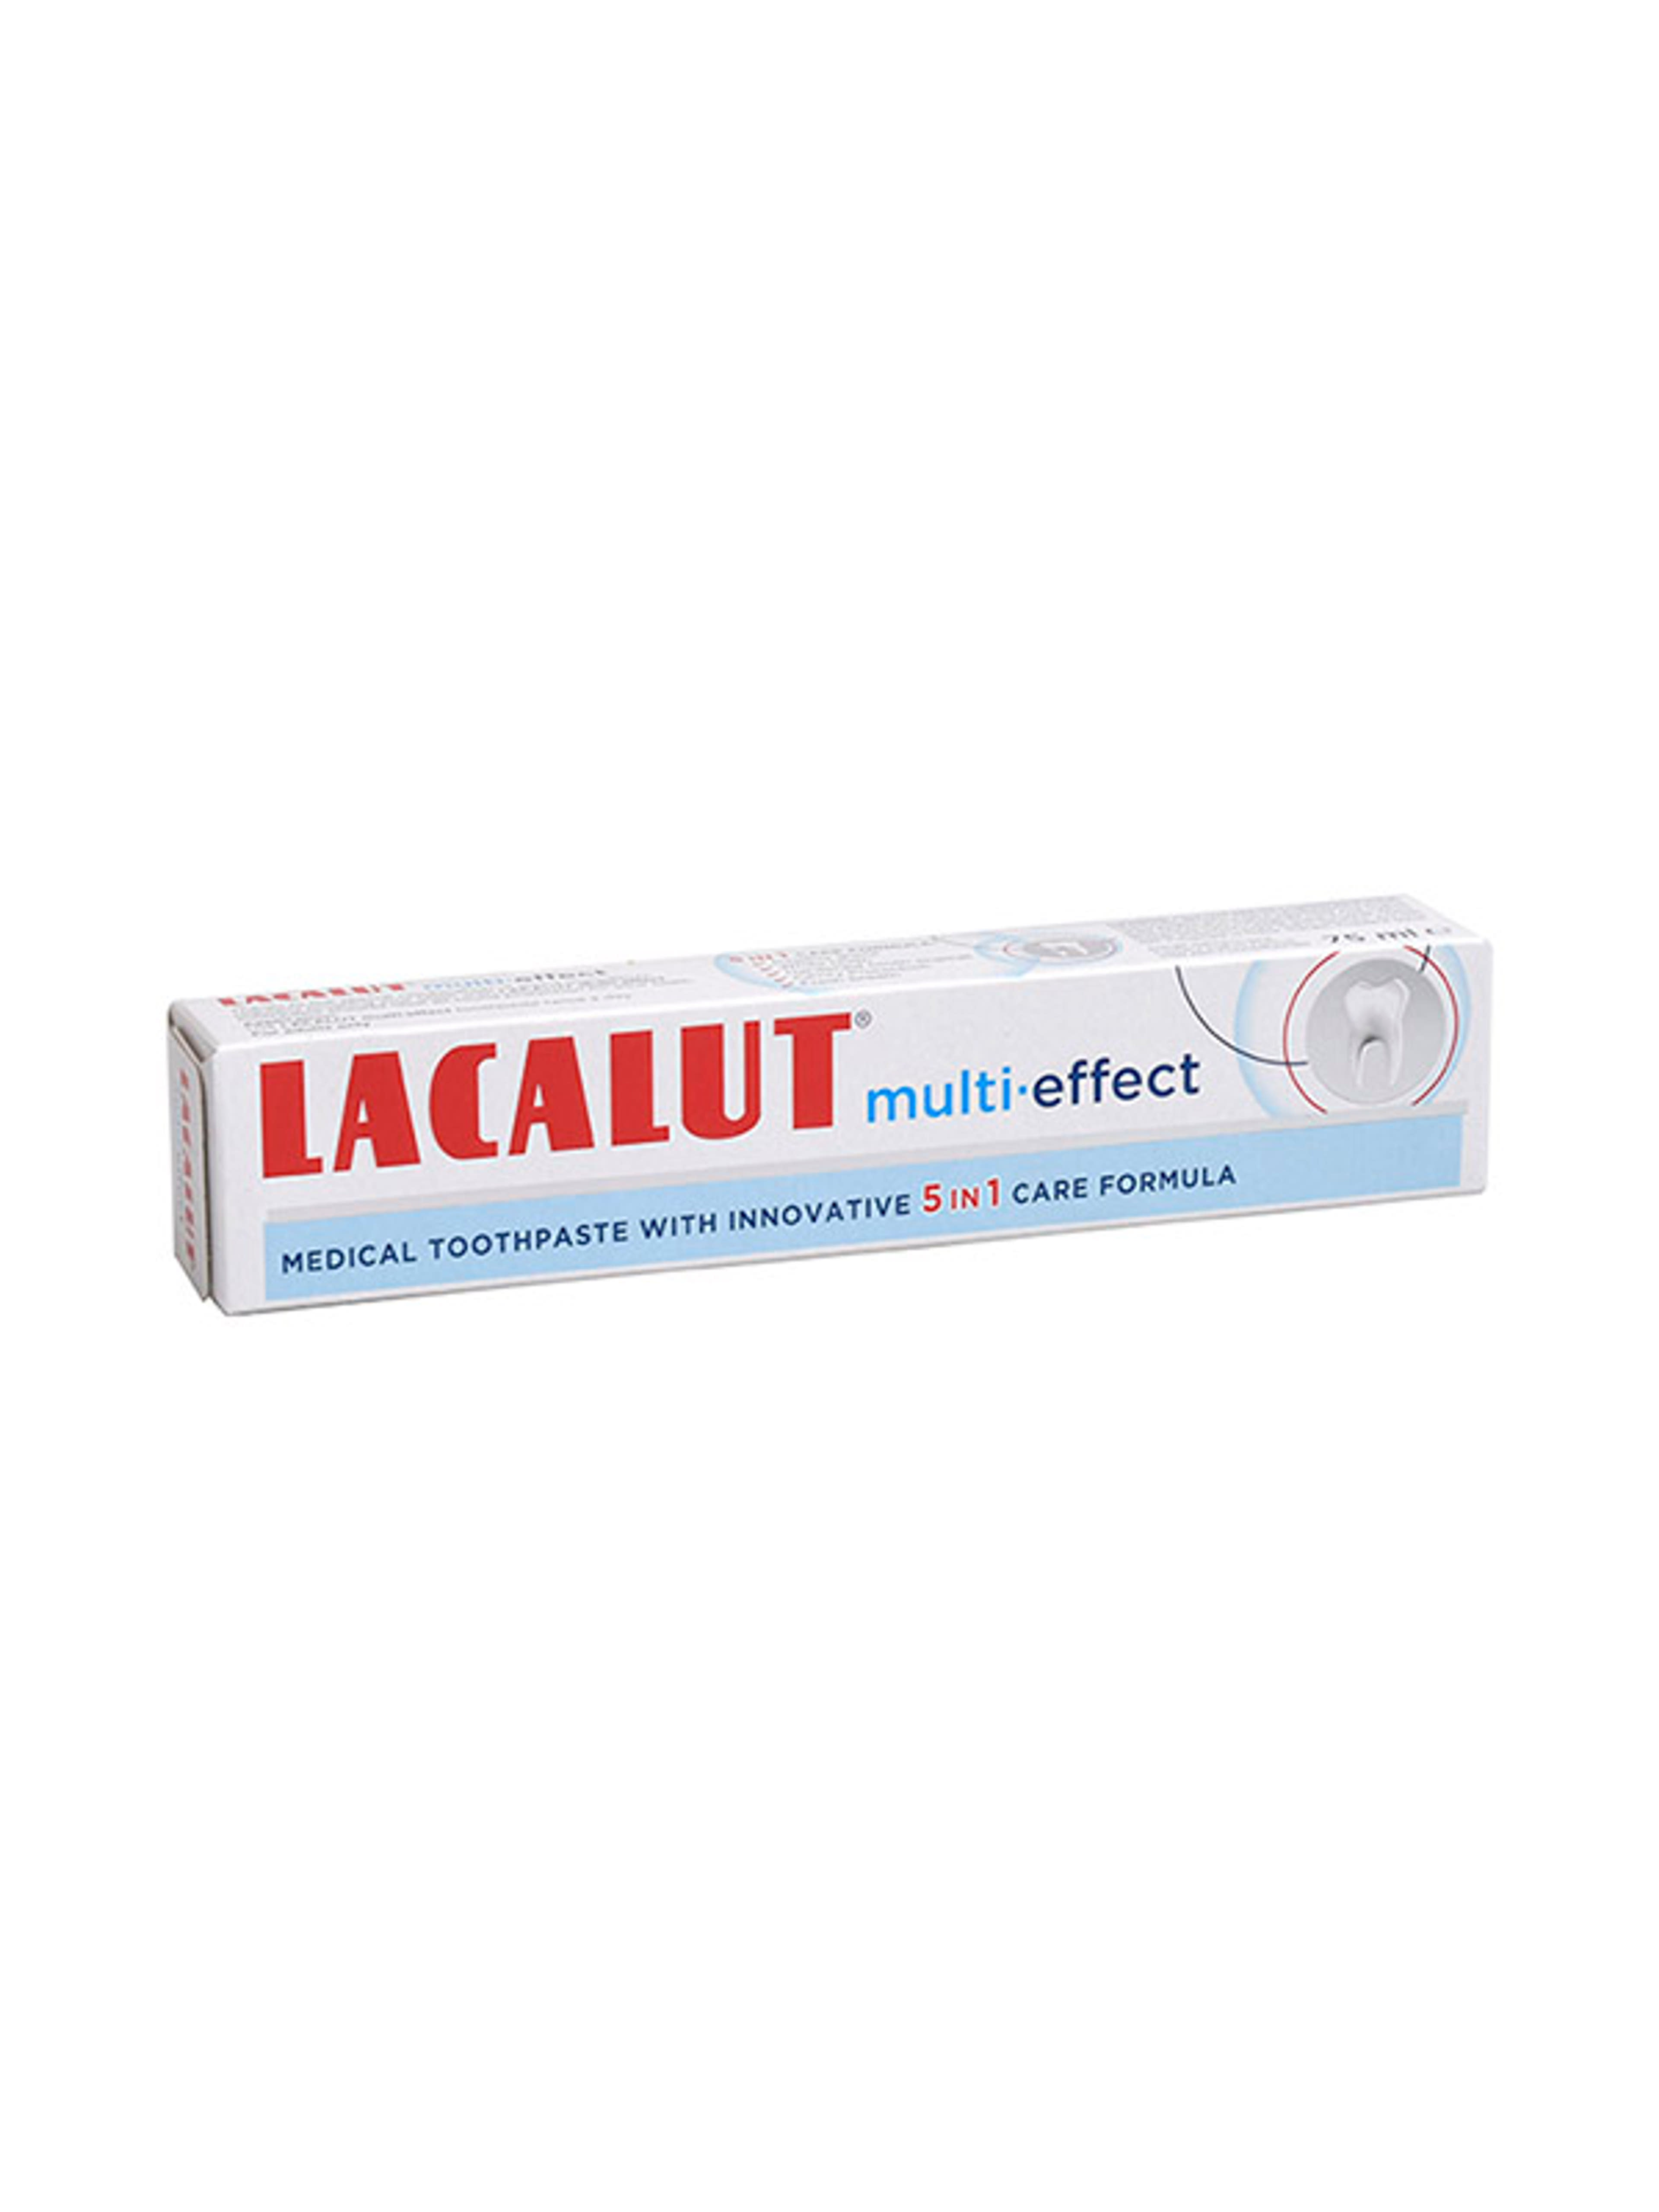 Lacalut multi-effect fogkrém - 75 ml